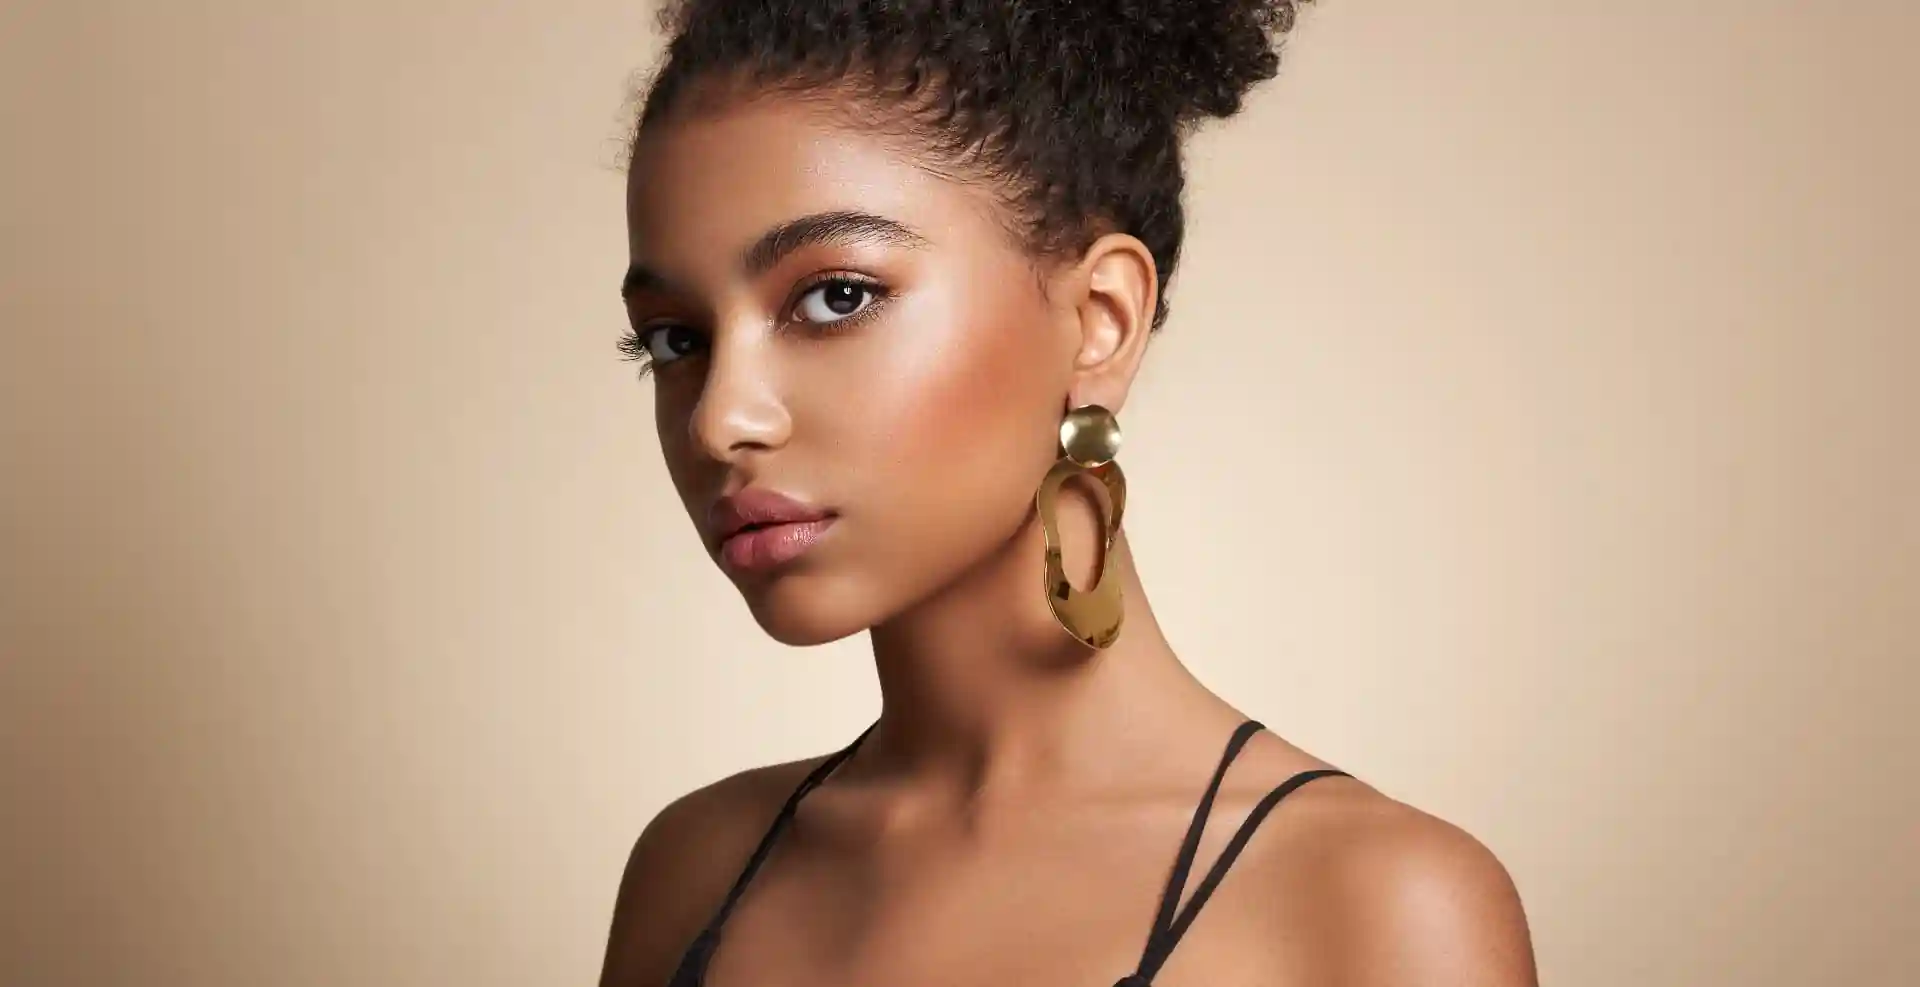 Chic, beautiful woman wearing big, gold earrings